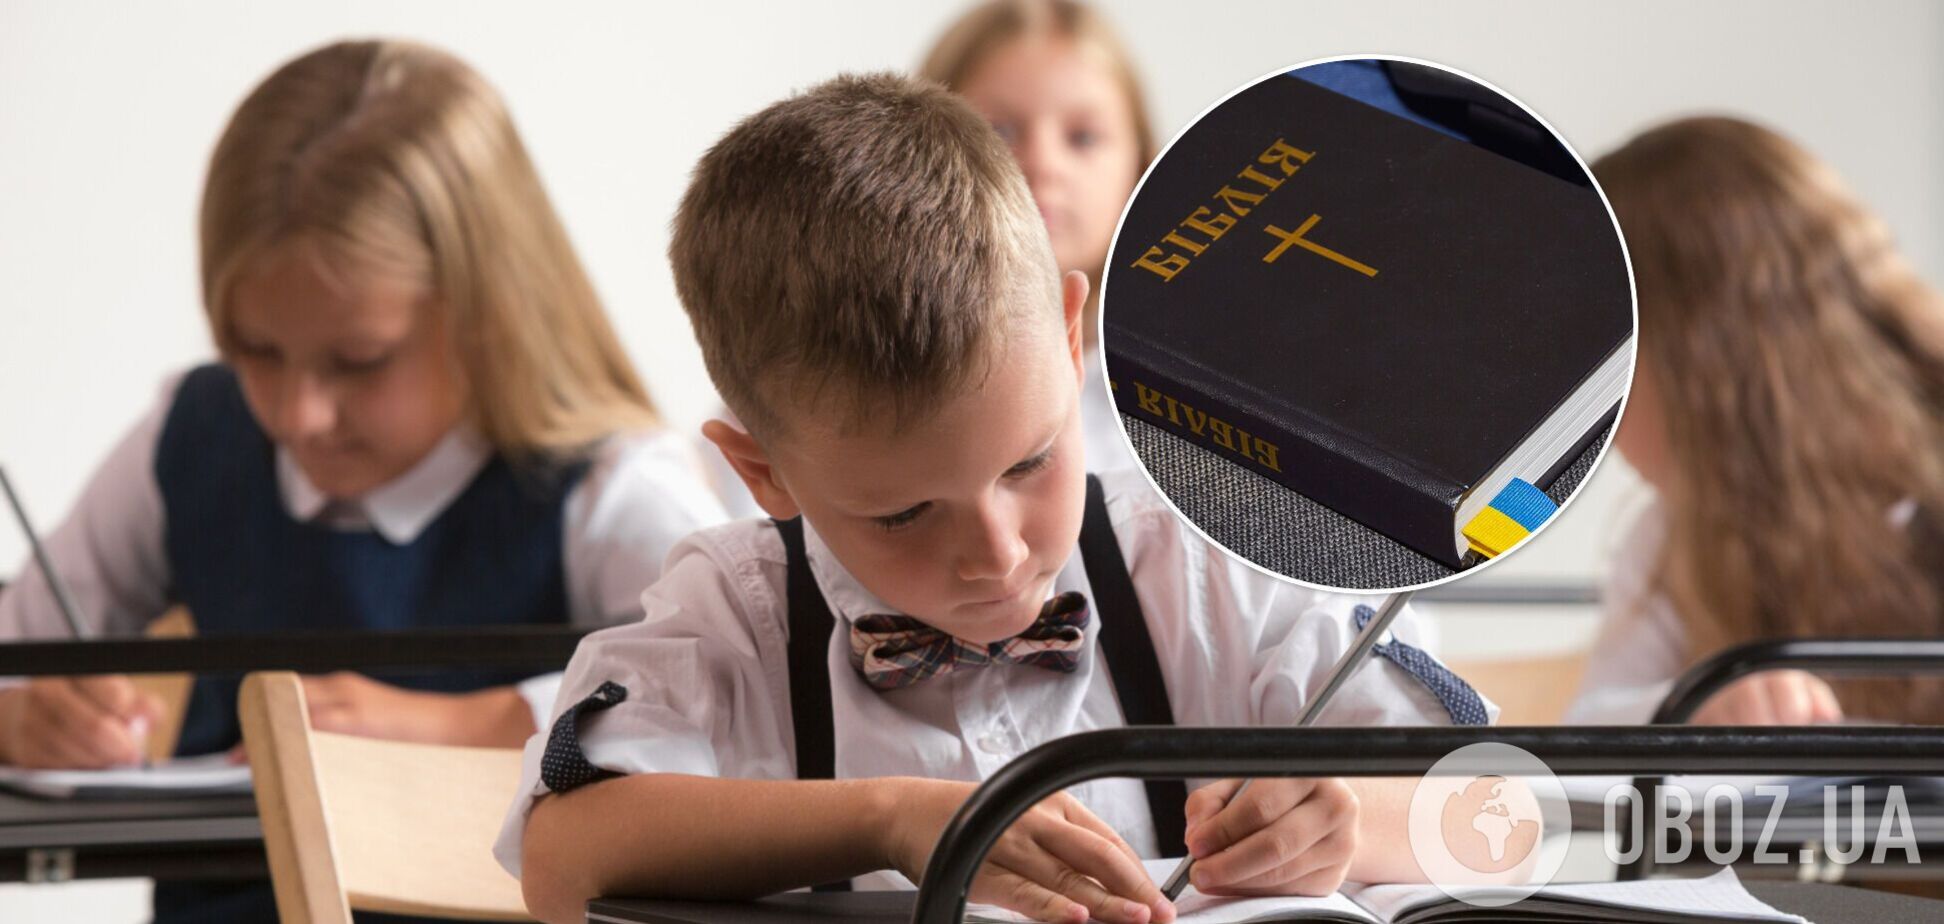 В общественном совете считают, что школьникам не хватает 'духовно-морального воспитания'